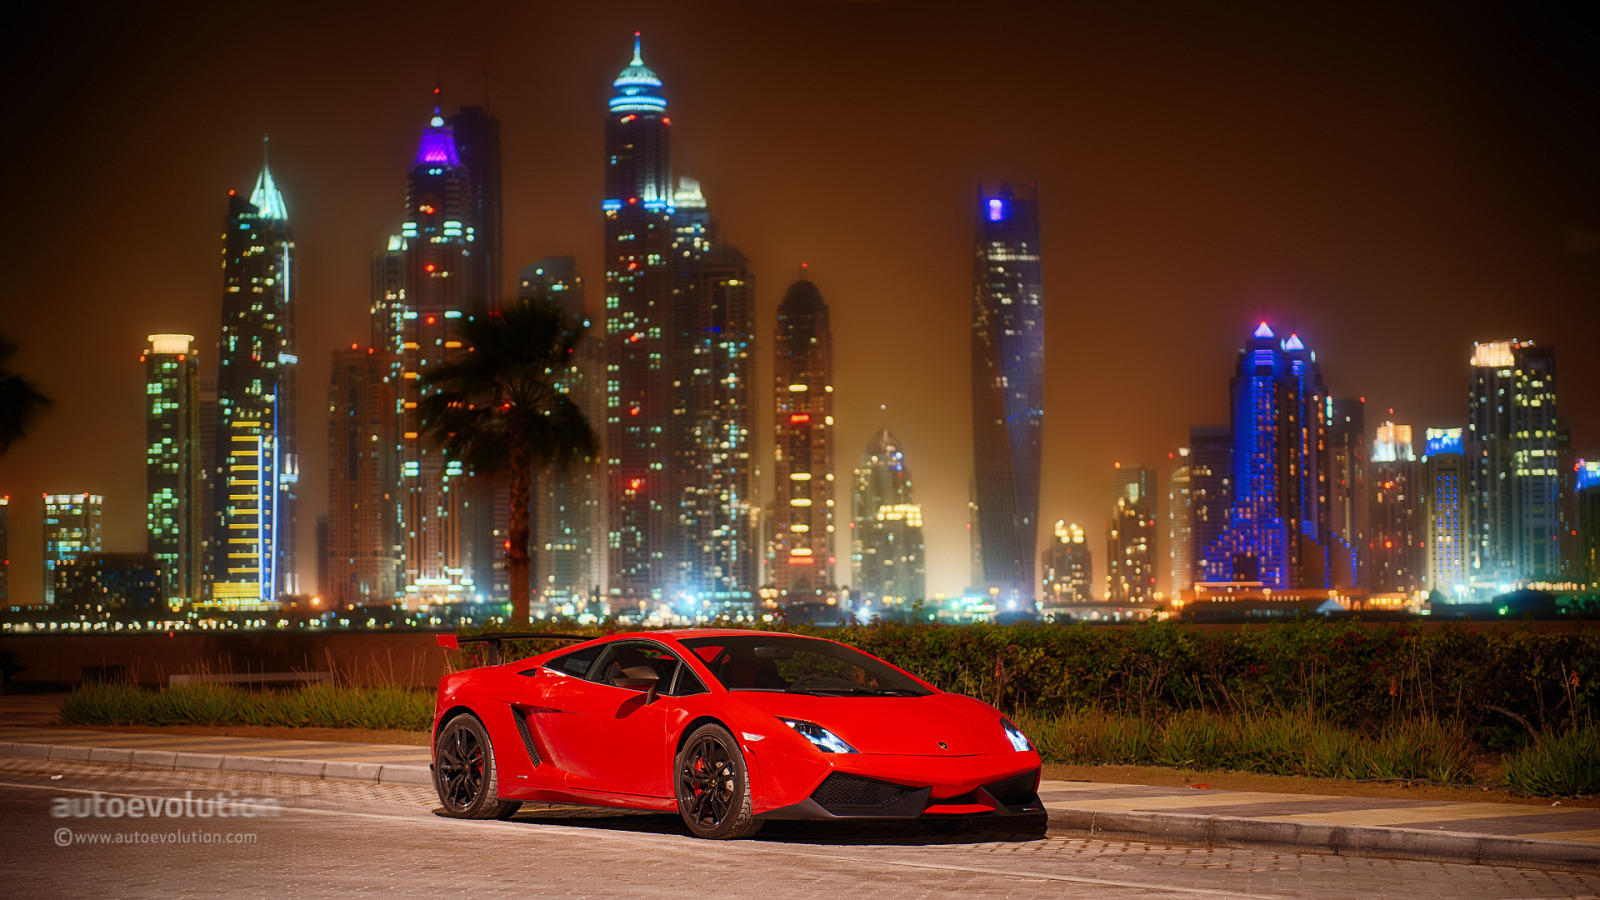 Ламборджини в Дубае. 8к Дубай. Дубай машины Ламборджини. Ламборгини ночной Дубай. Big city cars